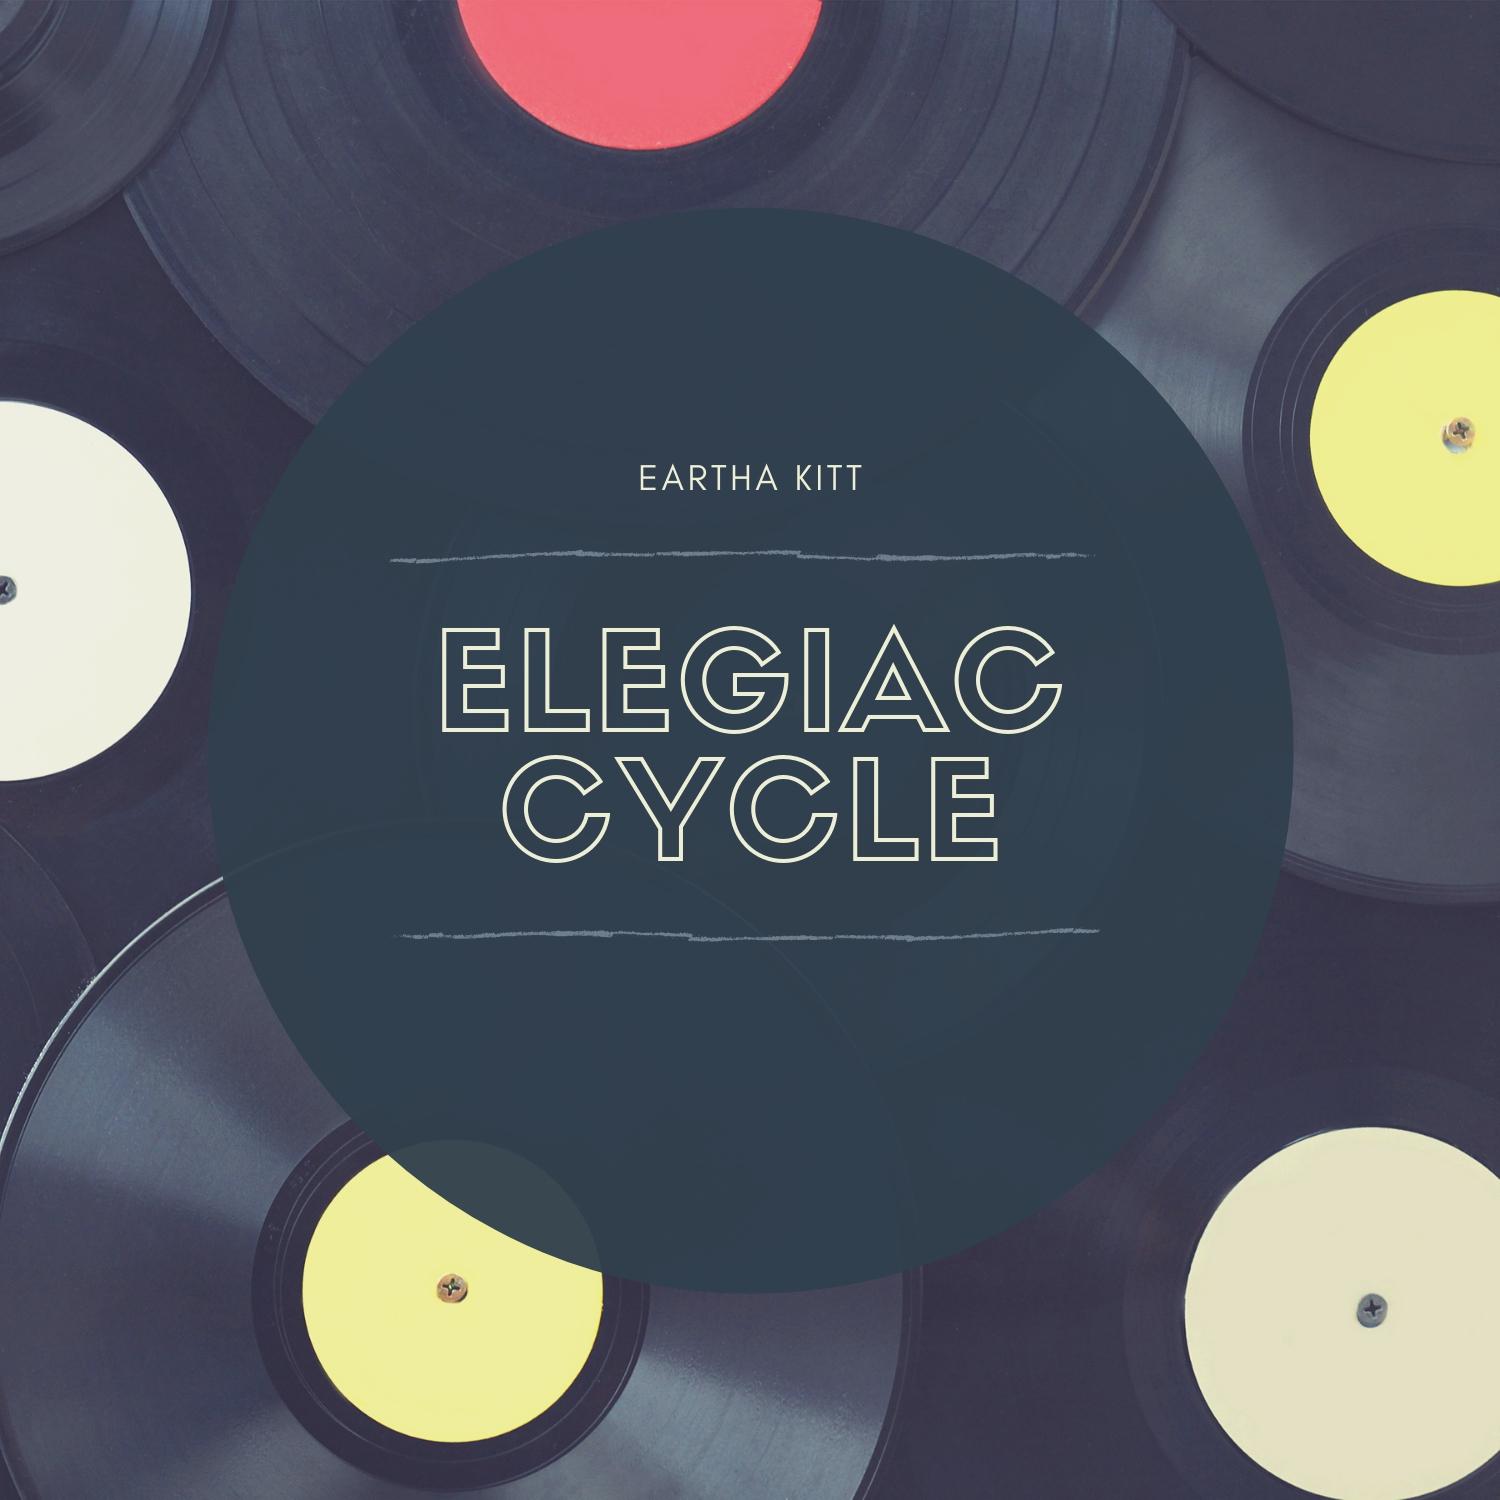 Elegiac Cycle